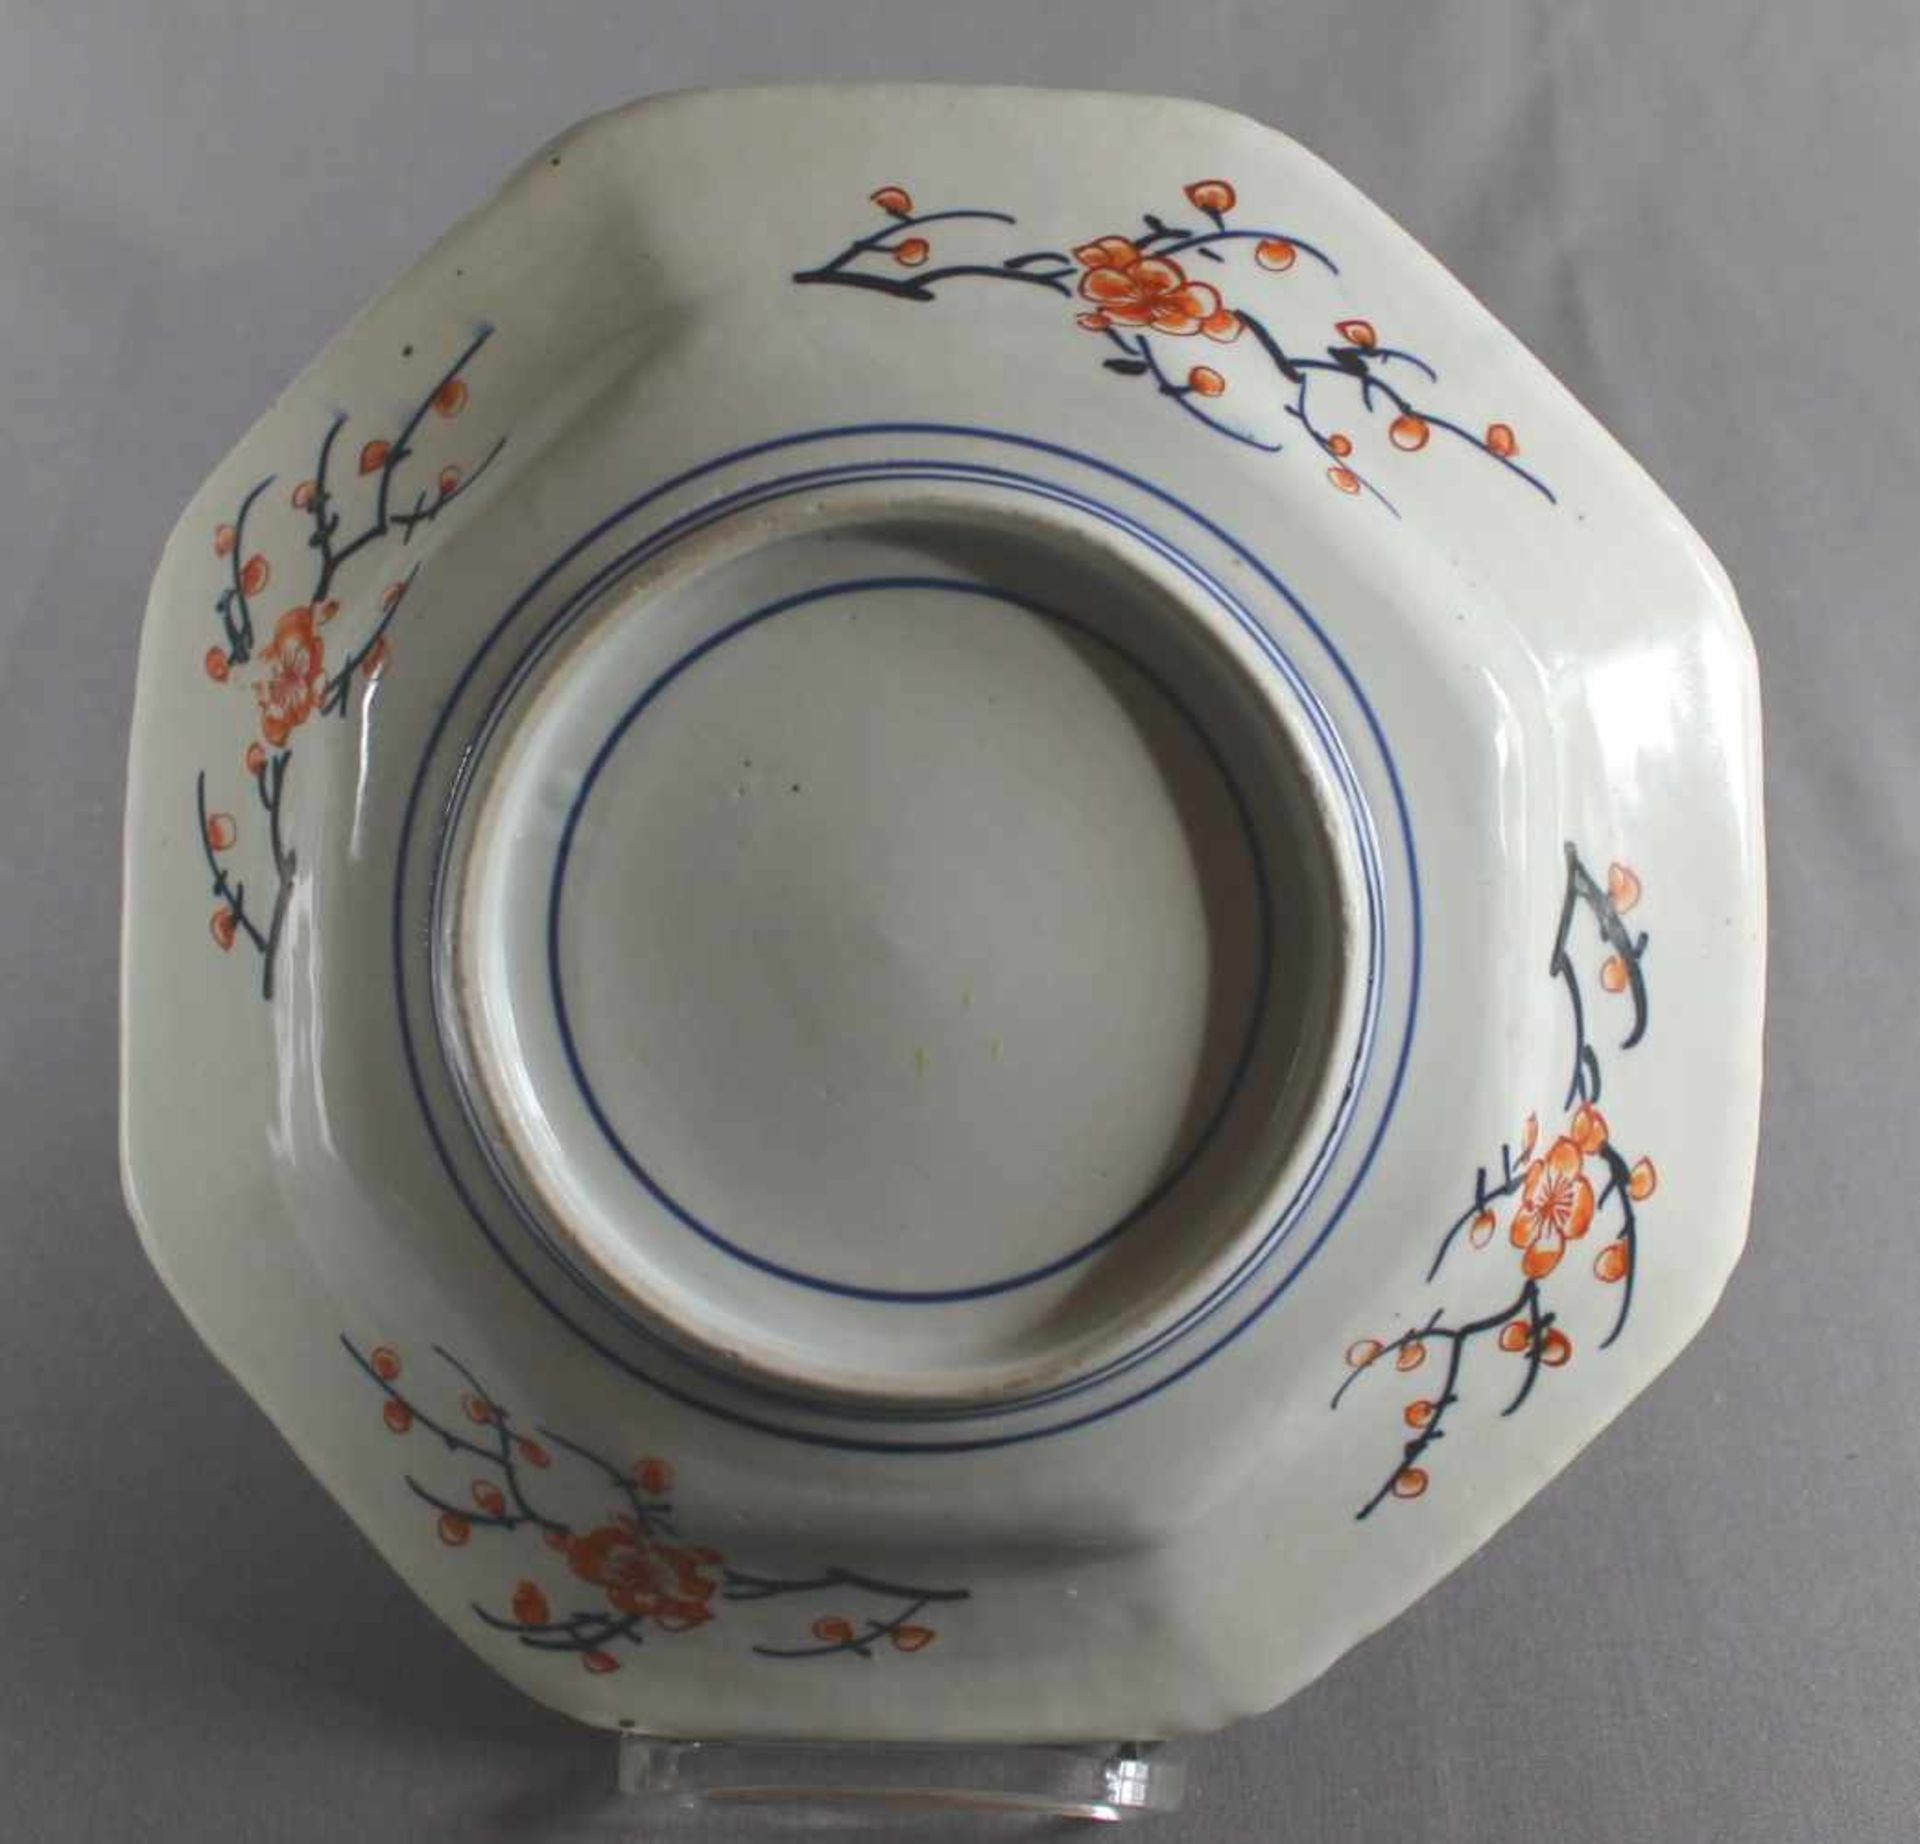 1 Porzellanplatte, 8-eckig, leicht vertiefte Form mit reichem asiatischen Dekor, berieben, D ca. - Bild 2 aus 2